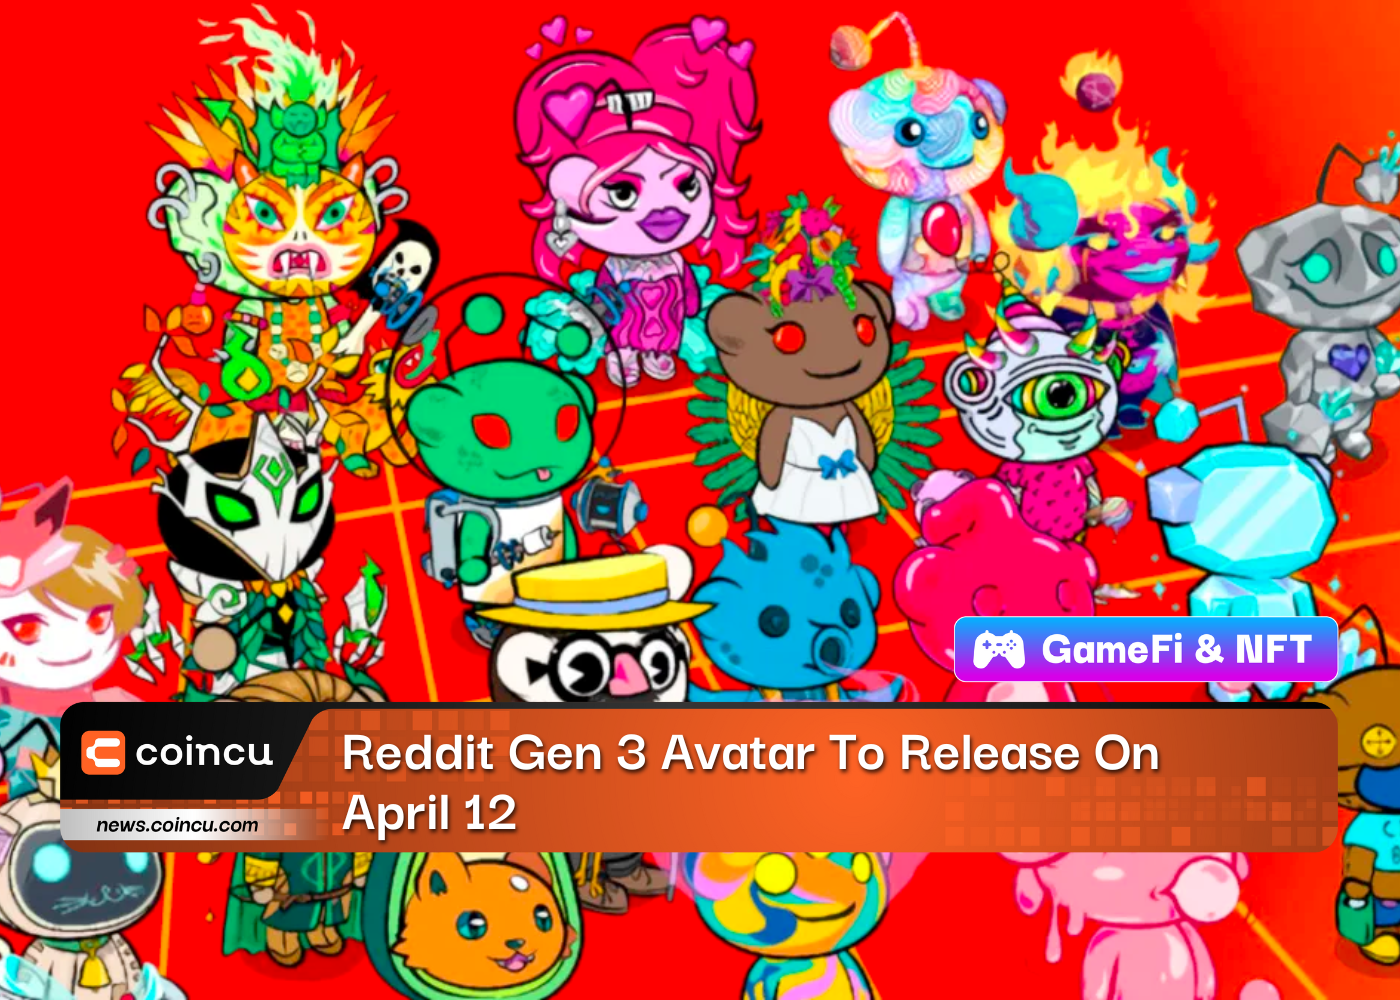 Reddit Gen 3 Avatar erscheint am 12. April